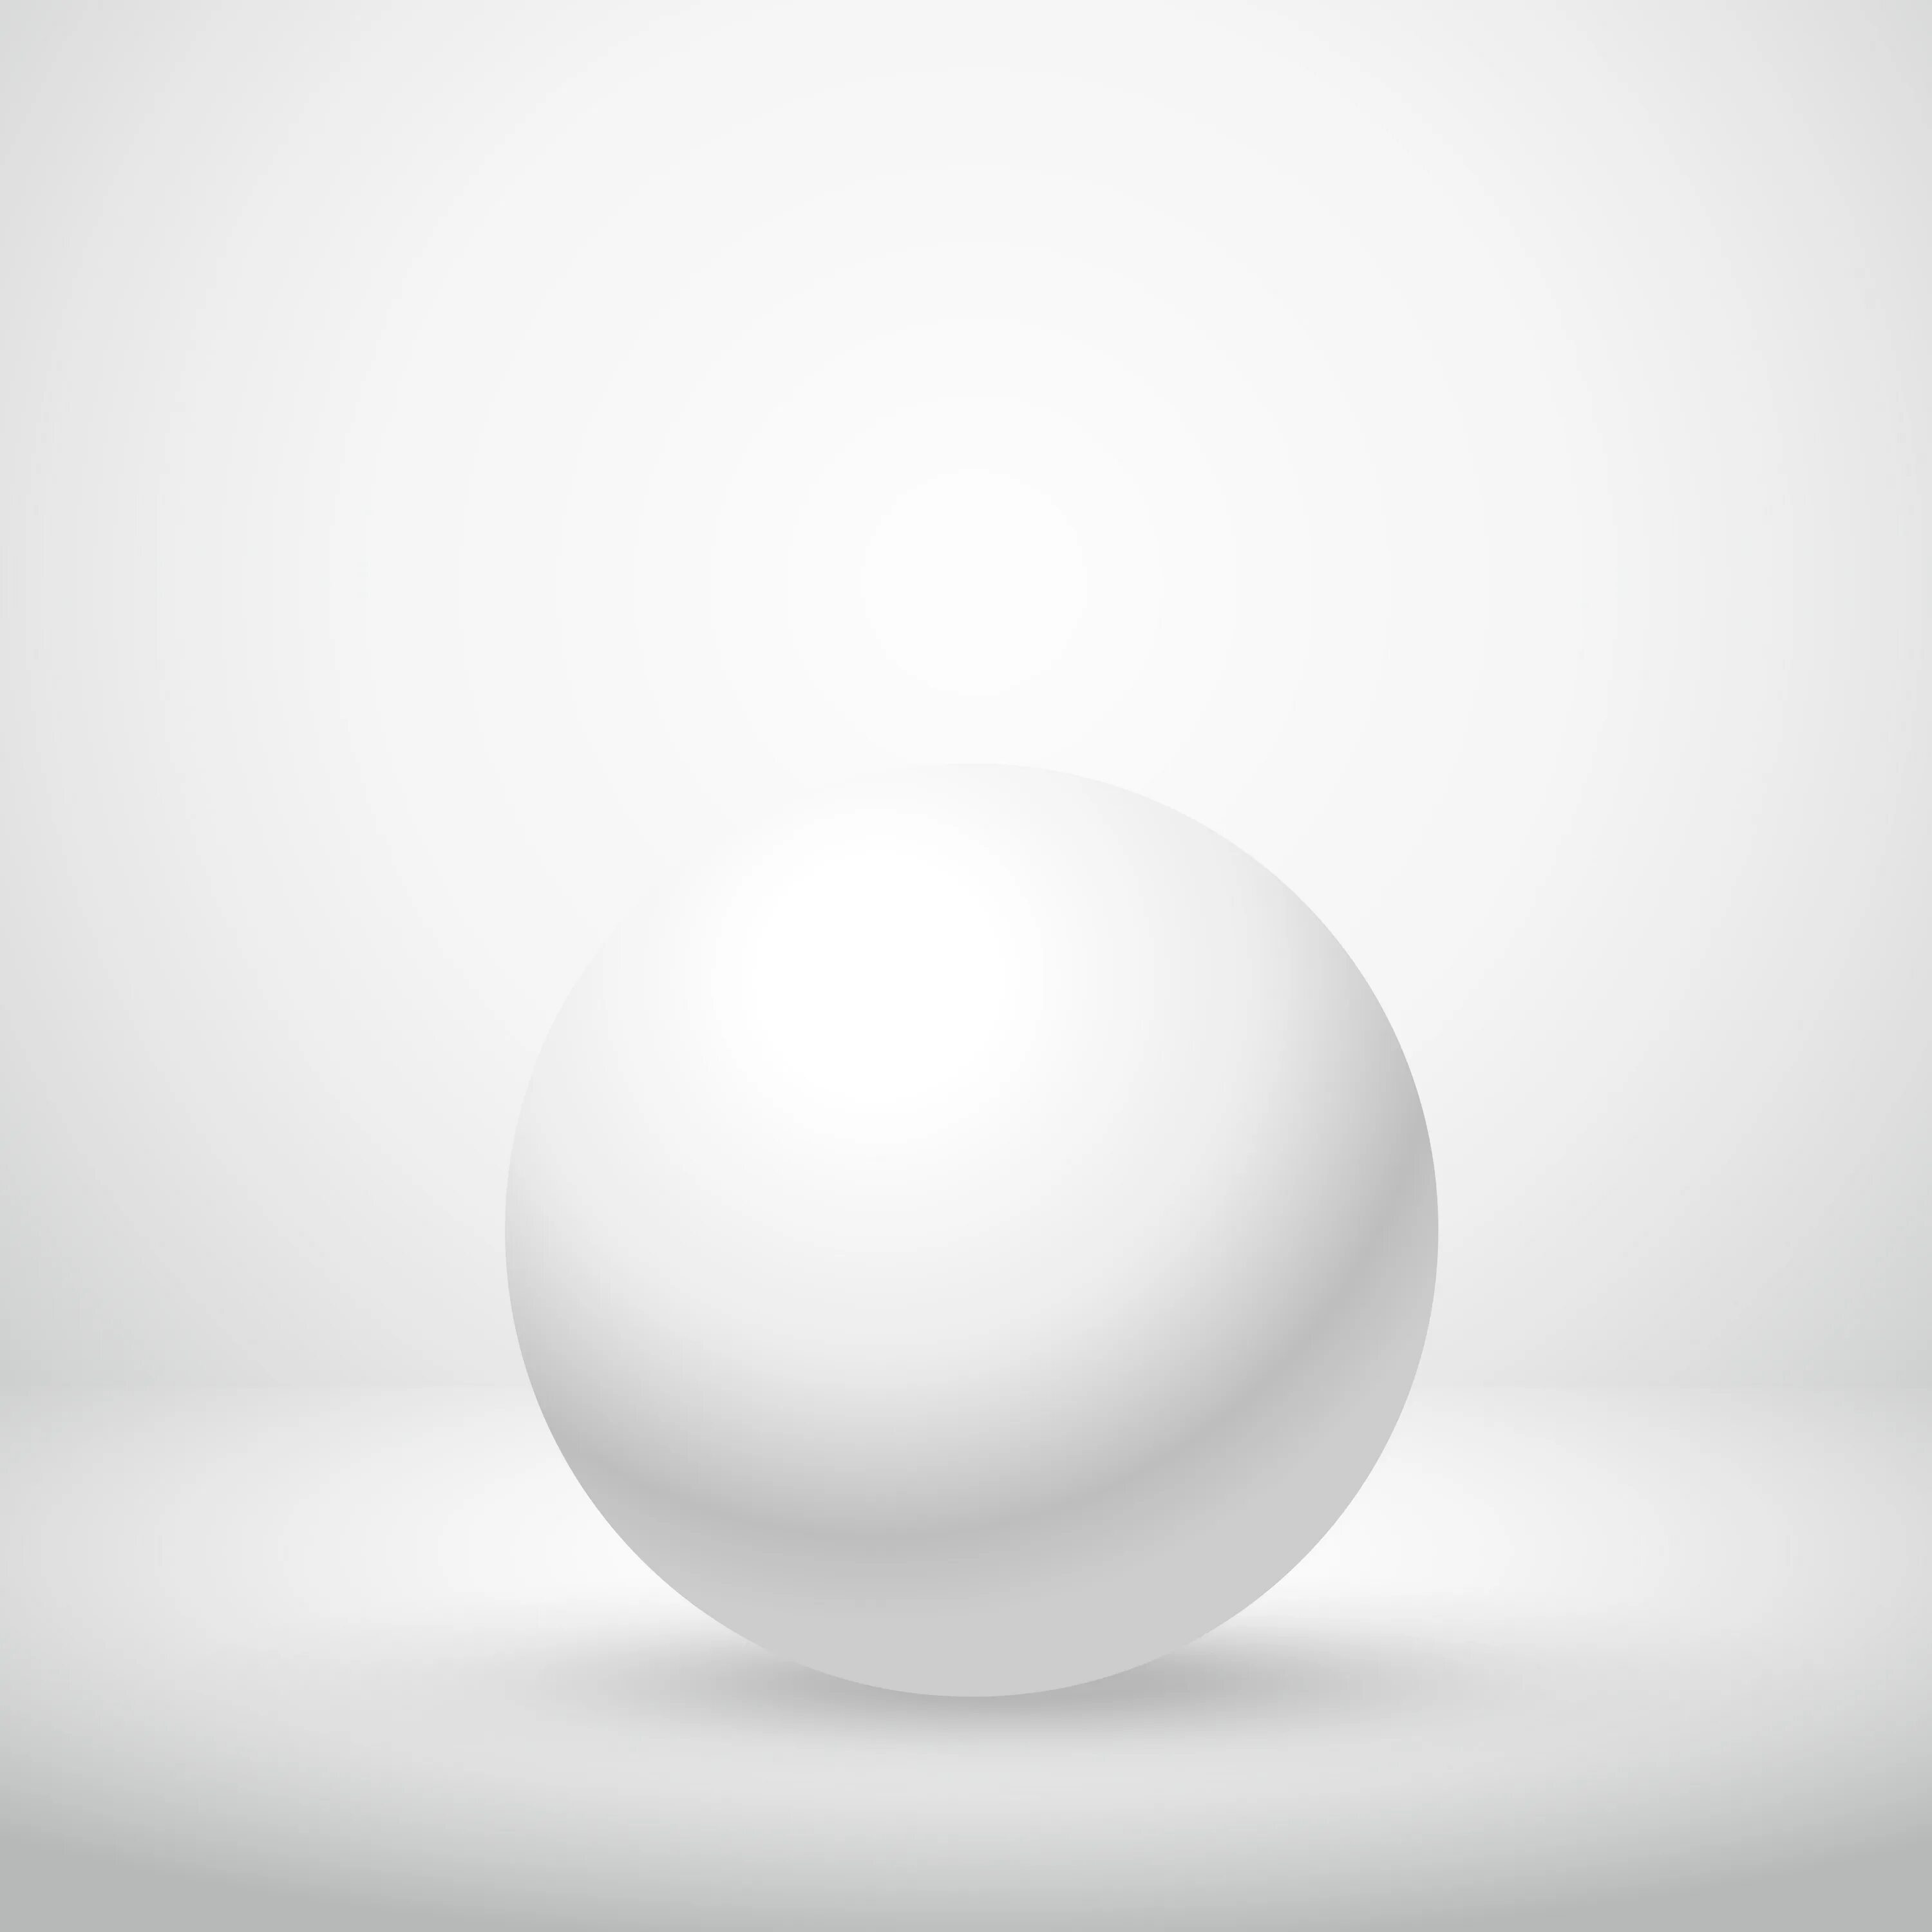 Цвет шара белый. Белый шар. Гипсовый шар на белом фоне. Белая сфера. Пустой шар.